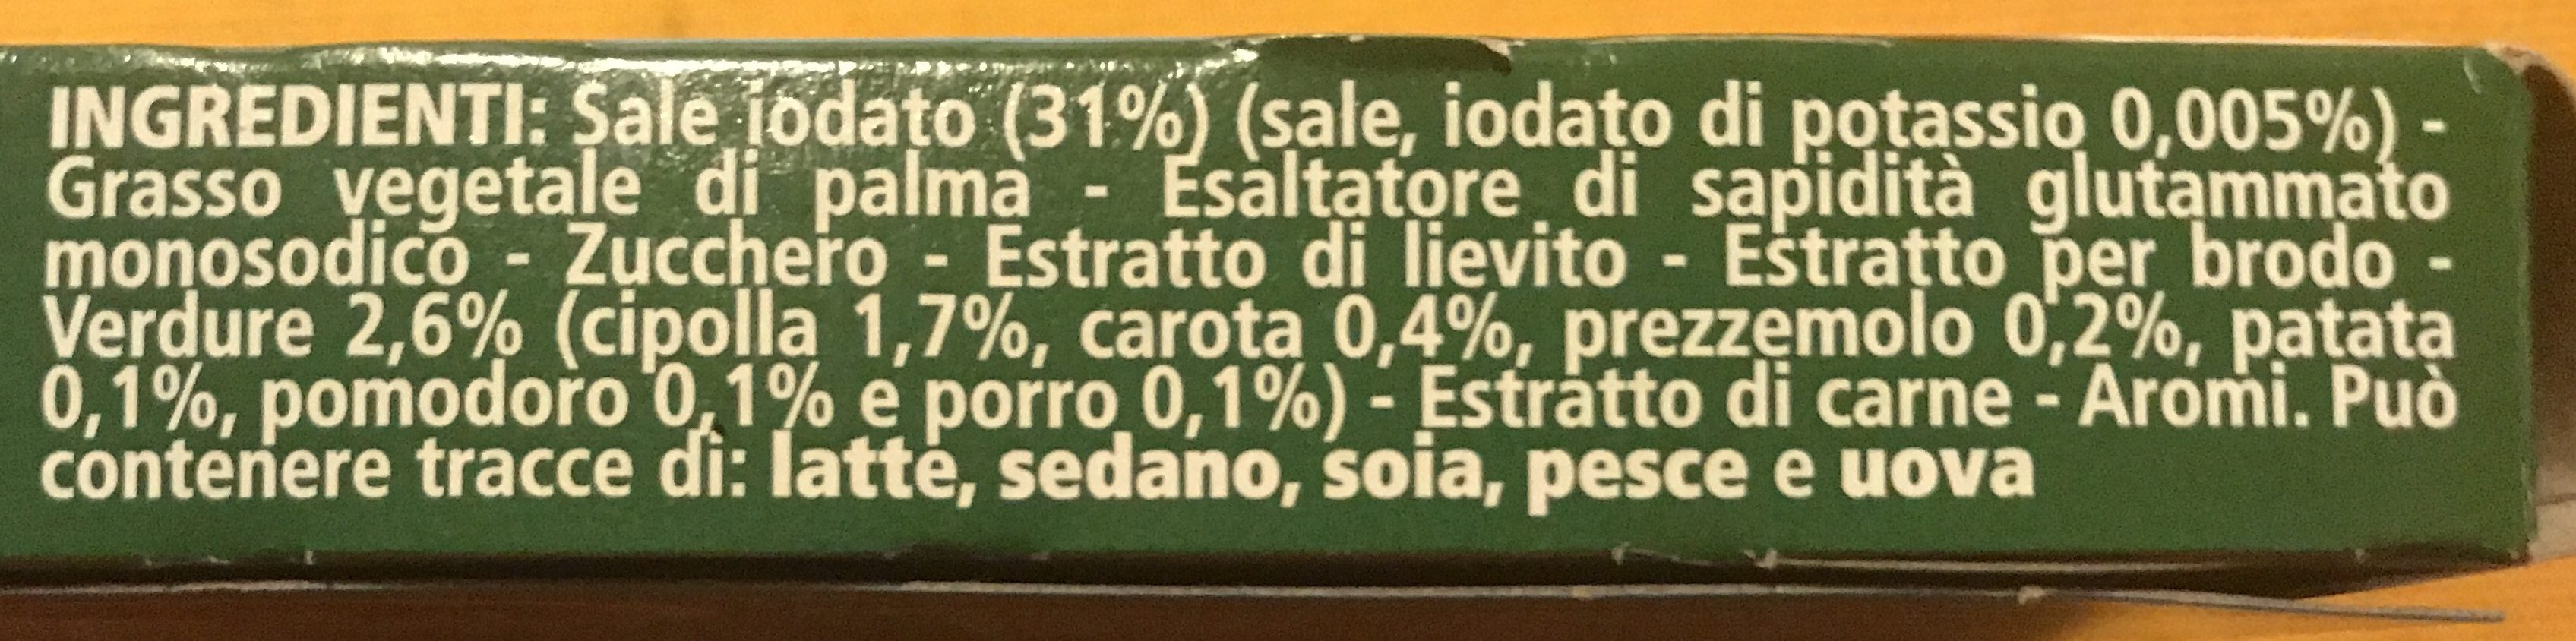 Il Mio Dado - Classico con -30% di sale - Ingredienti